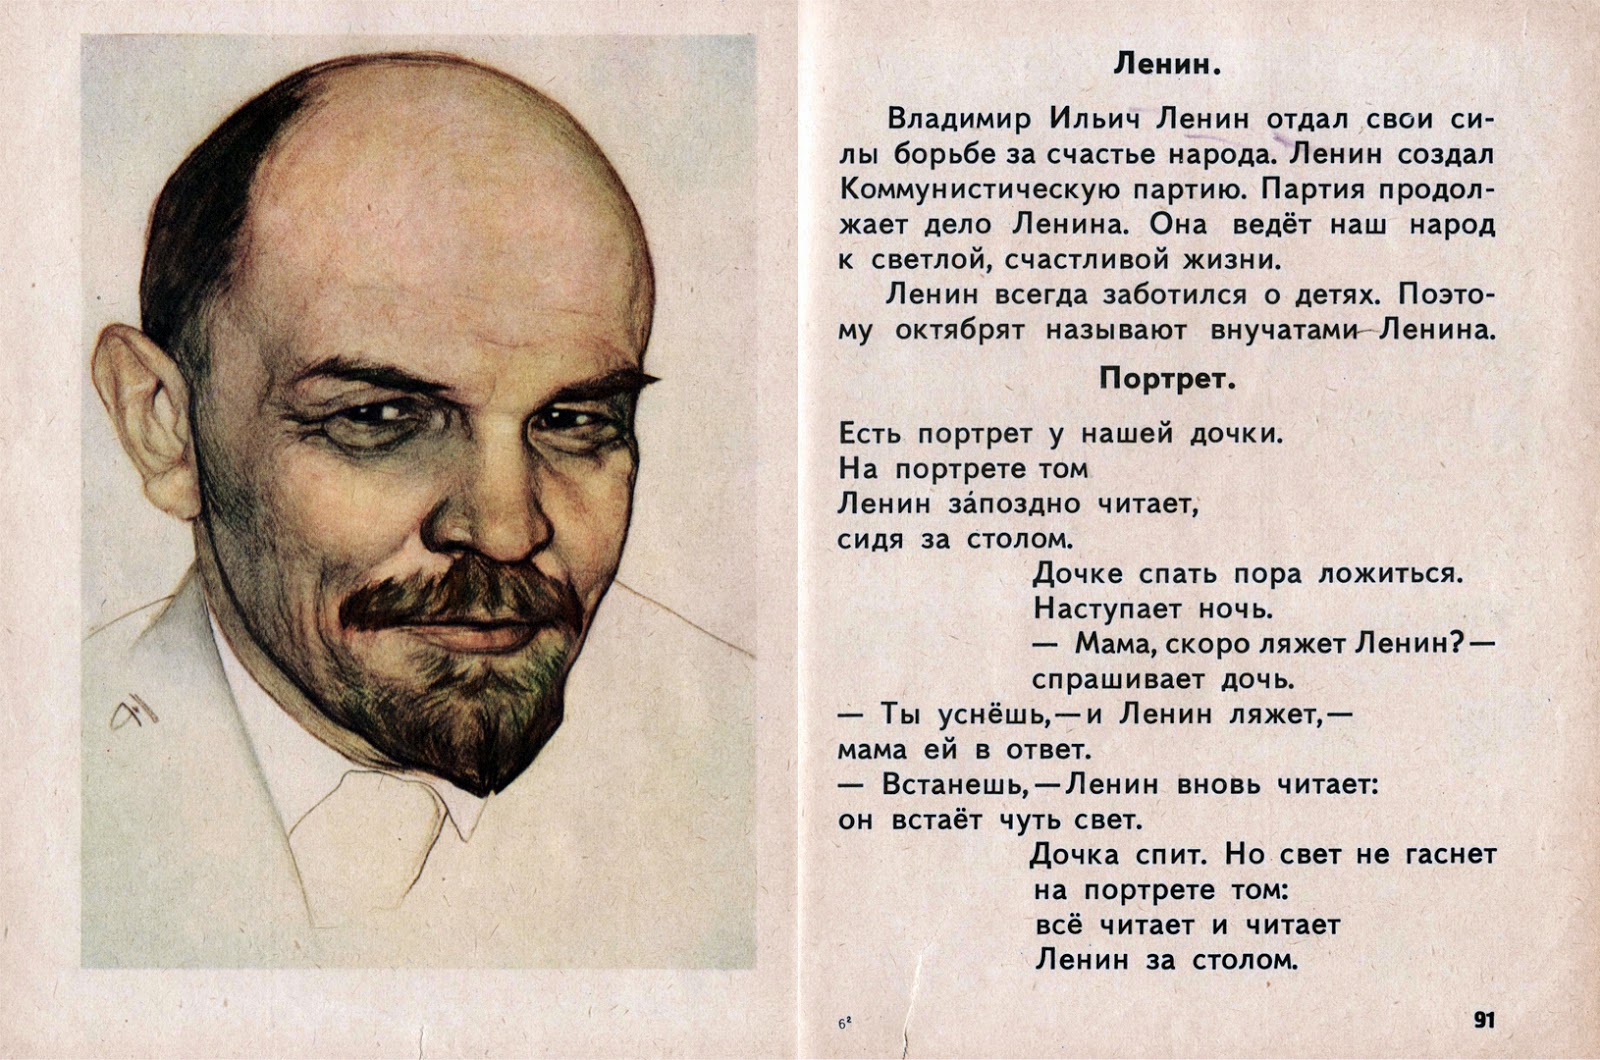 Я не буду читать про. Стихи про Ленина. Портрет Ленина в букваре. Детские стихи про Ленина. Рассказ о Ленине.